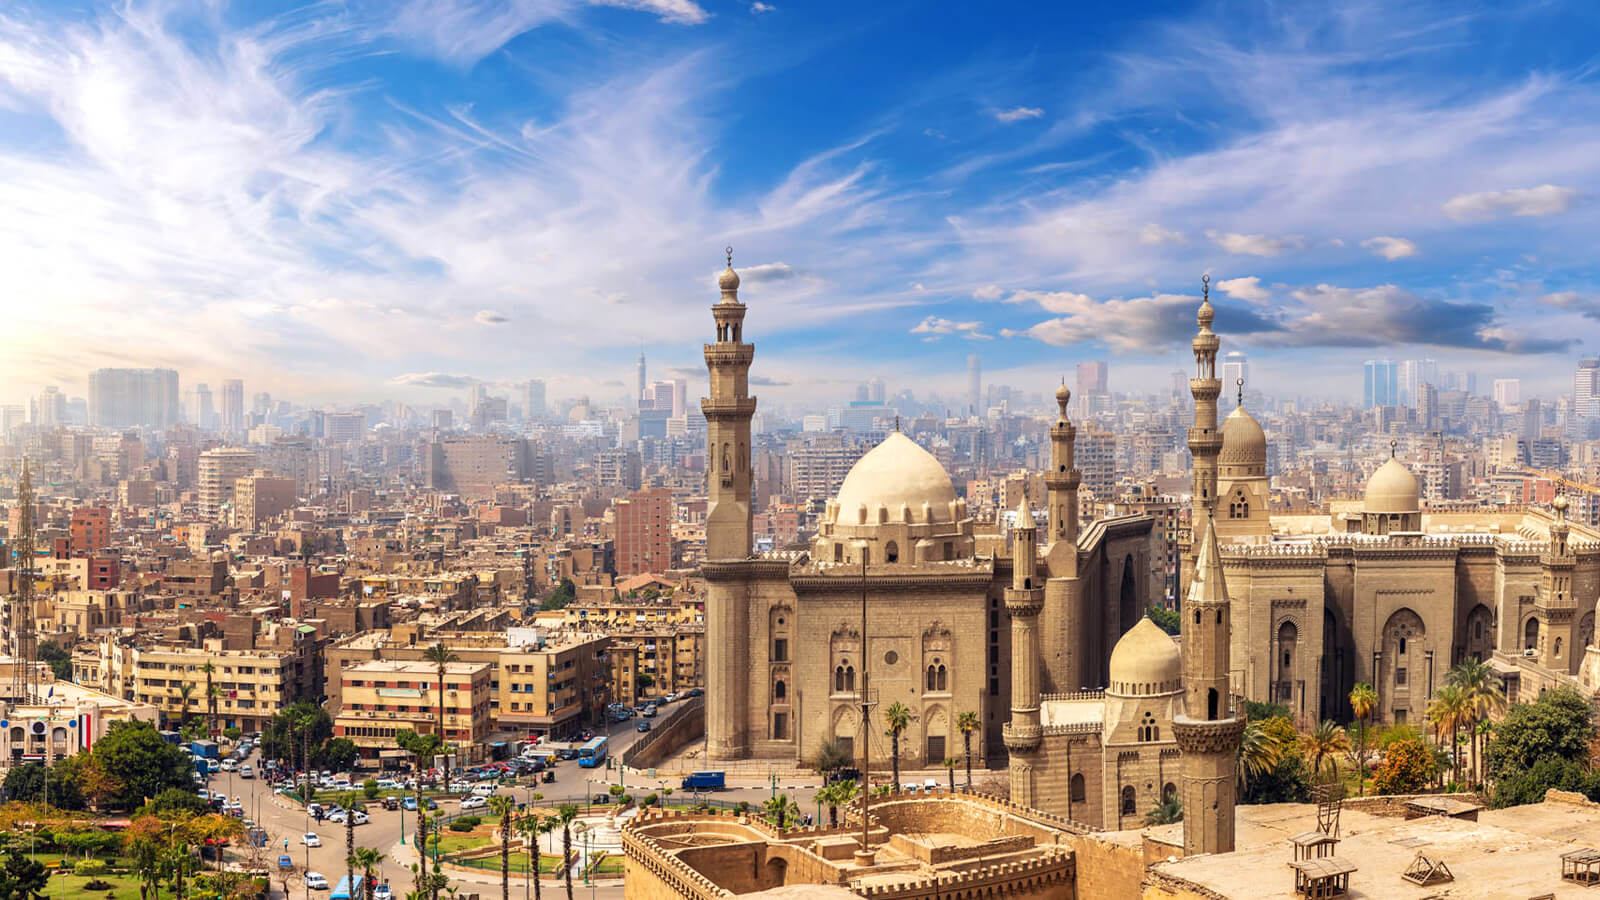 Image of Cairo, Egypt (Port Said)